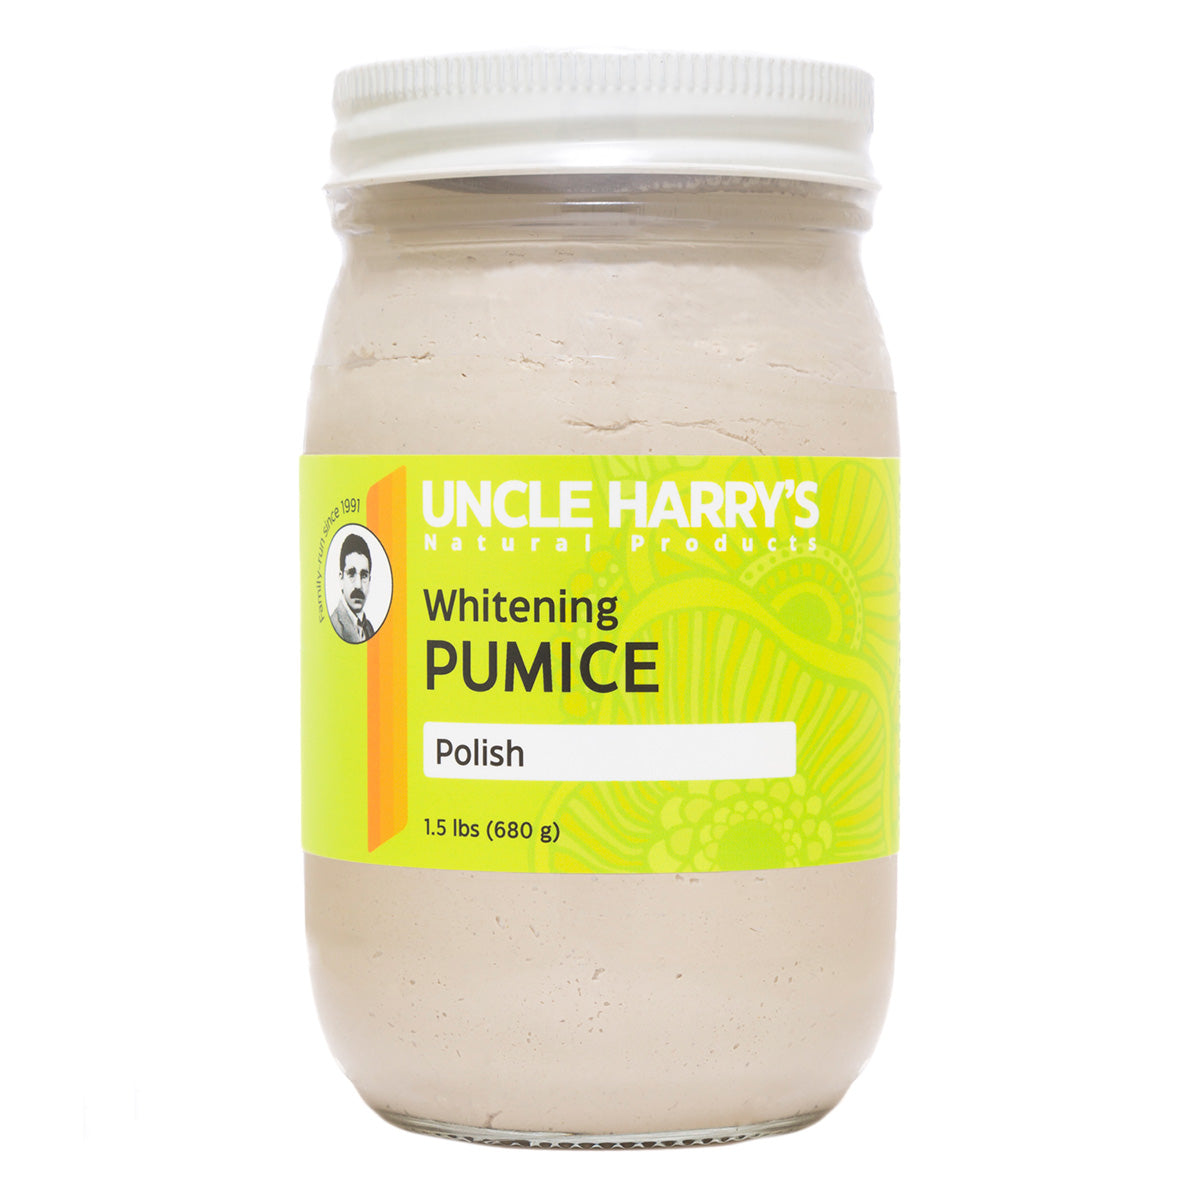 Whitening Pumice Polish 1.5 lbs glass jar